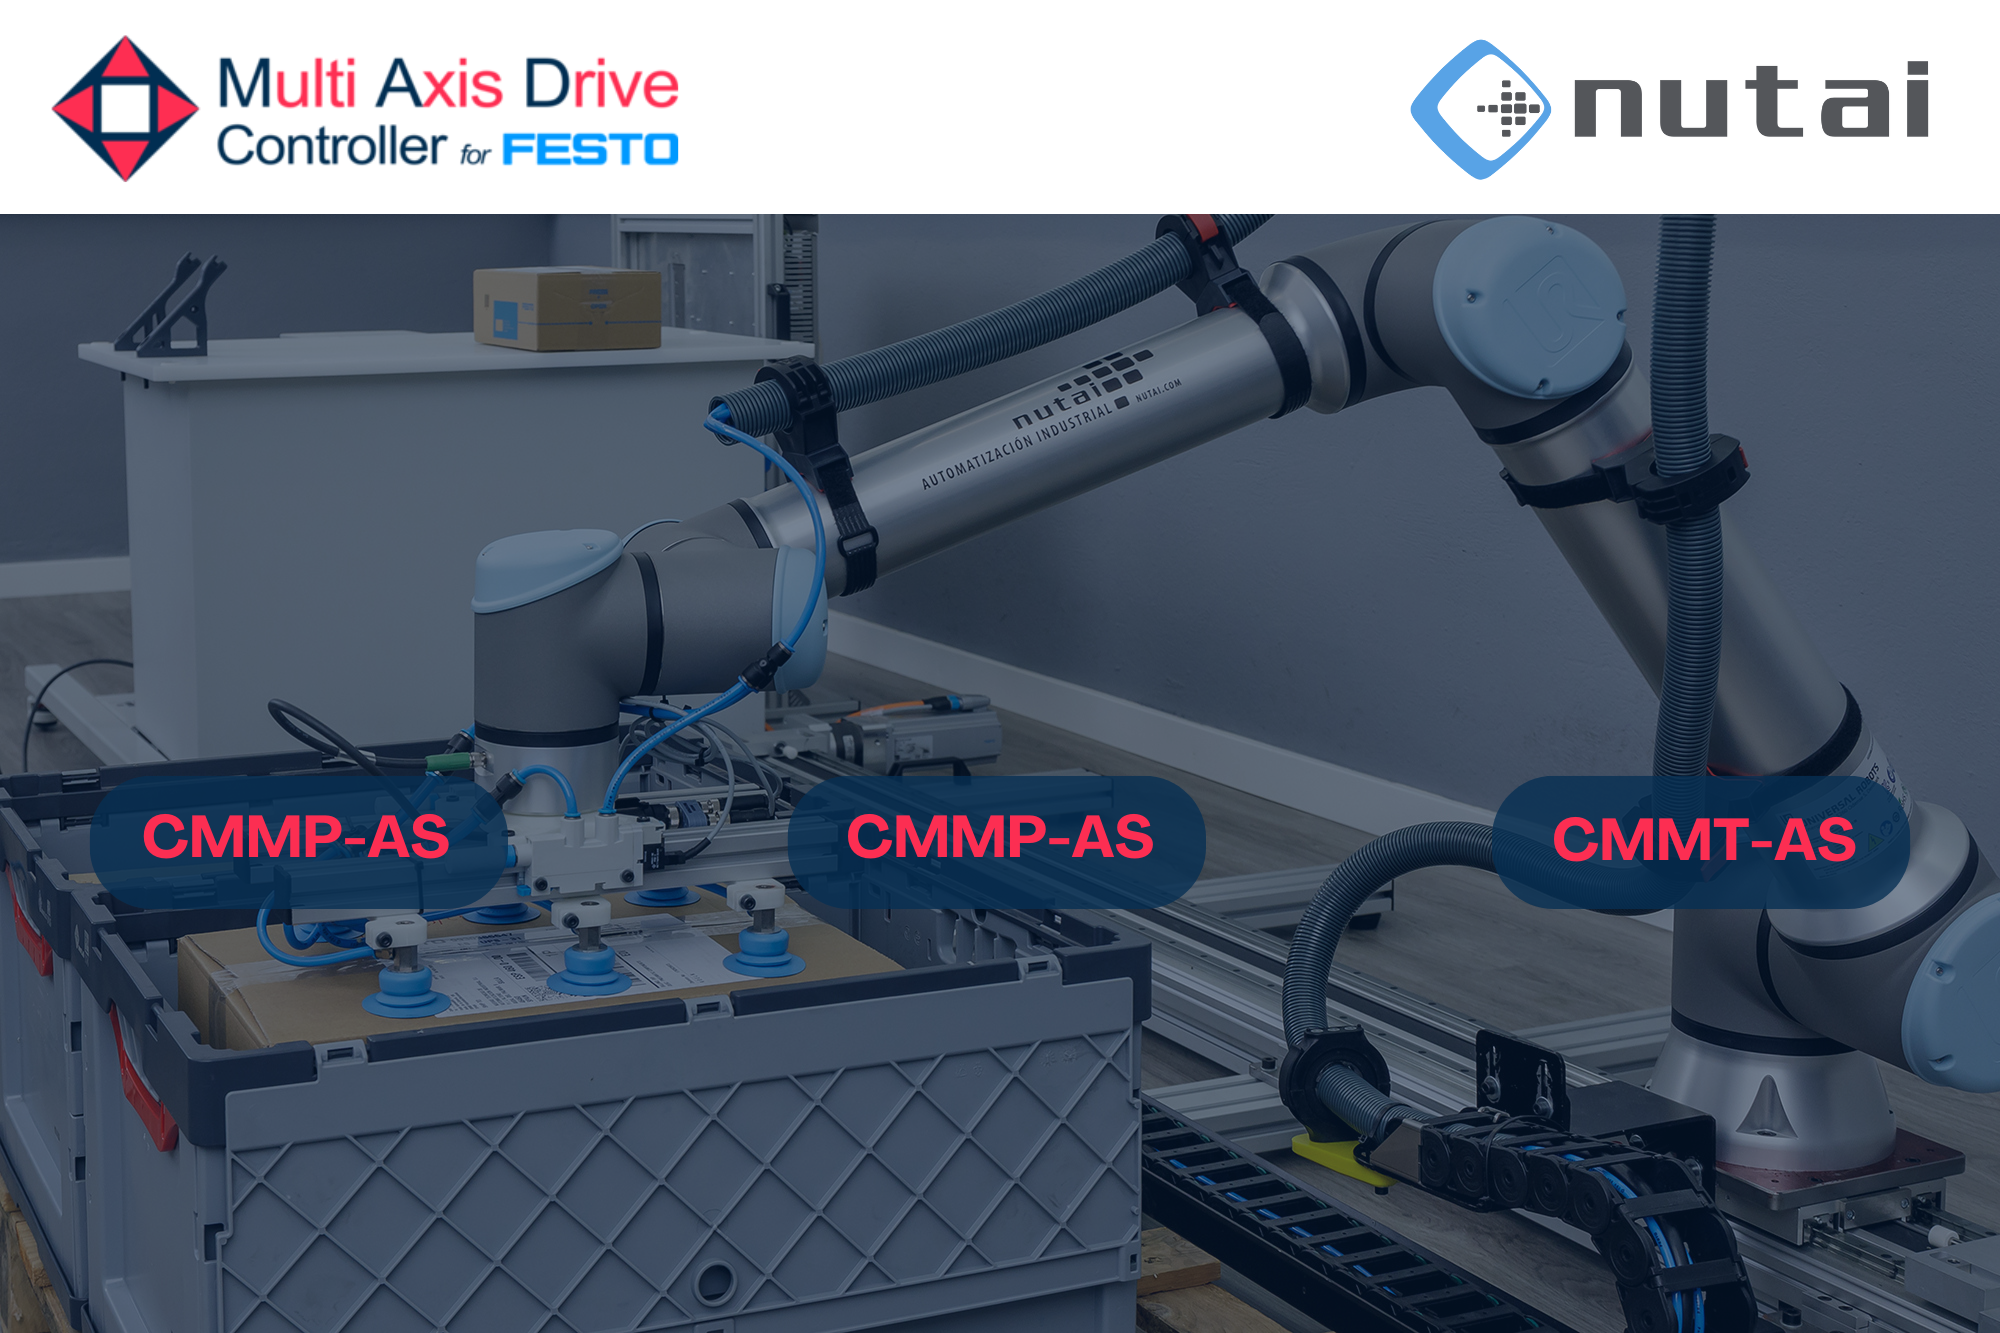 En NUTAI presentamos la versión 2.1.0 de Mad Controller un software URCap diseñado para controlar uno o múltiples ejes externos de FESTO CMMT-AS, CMMP-AS, y ahora CMMT-ST, desde robots colaborativos de Universal Robots.